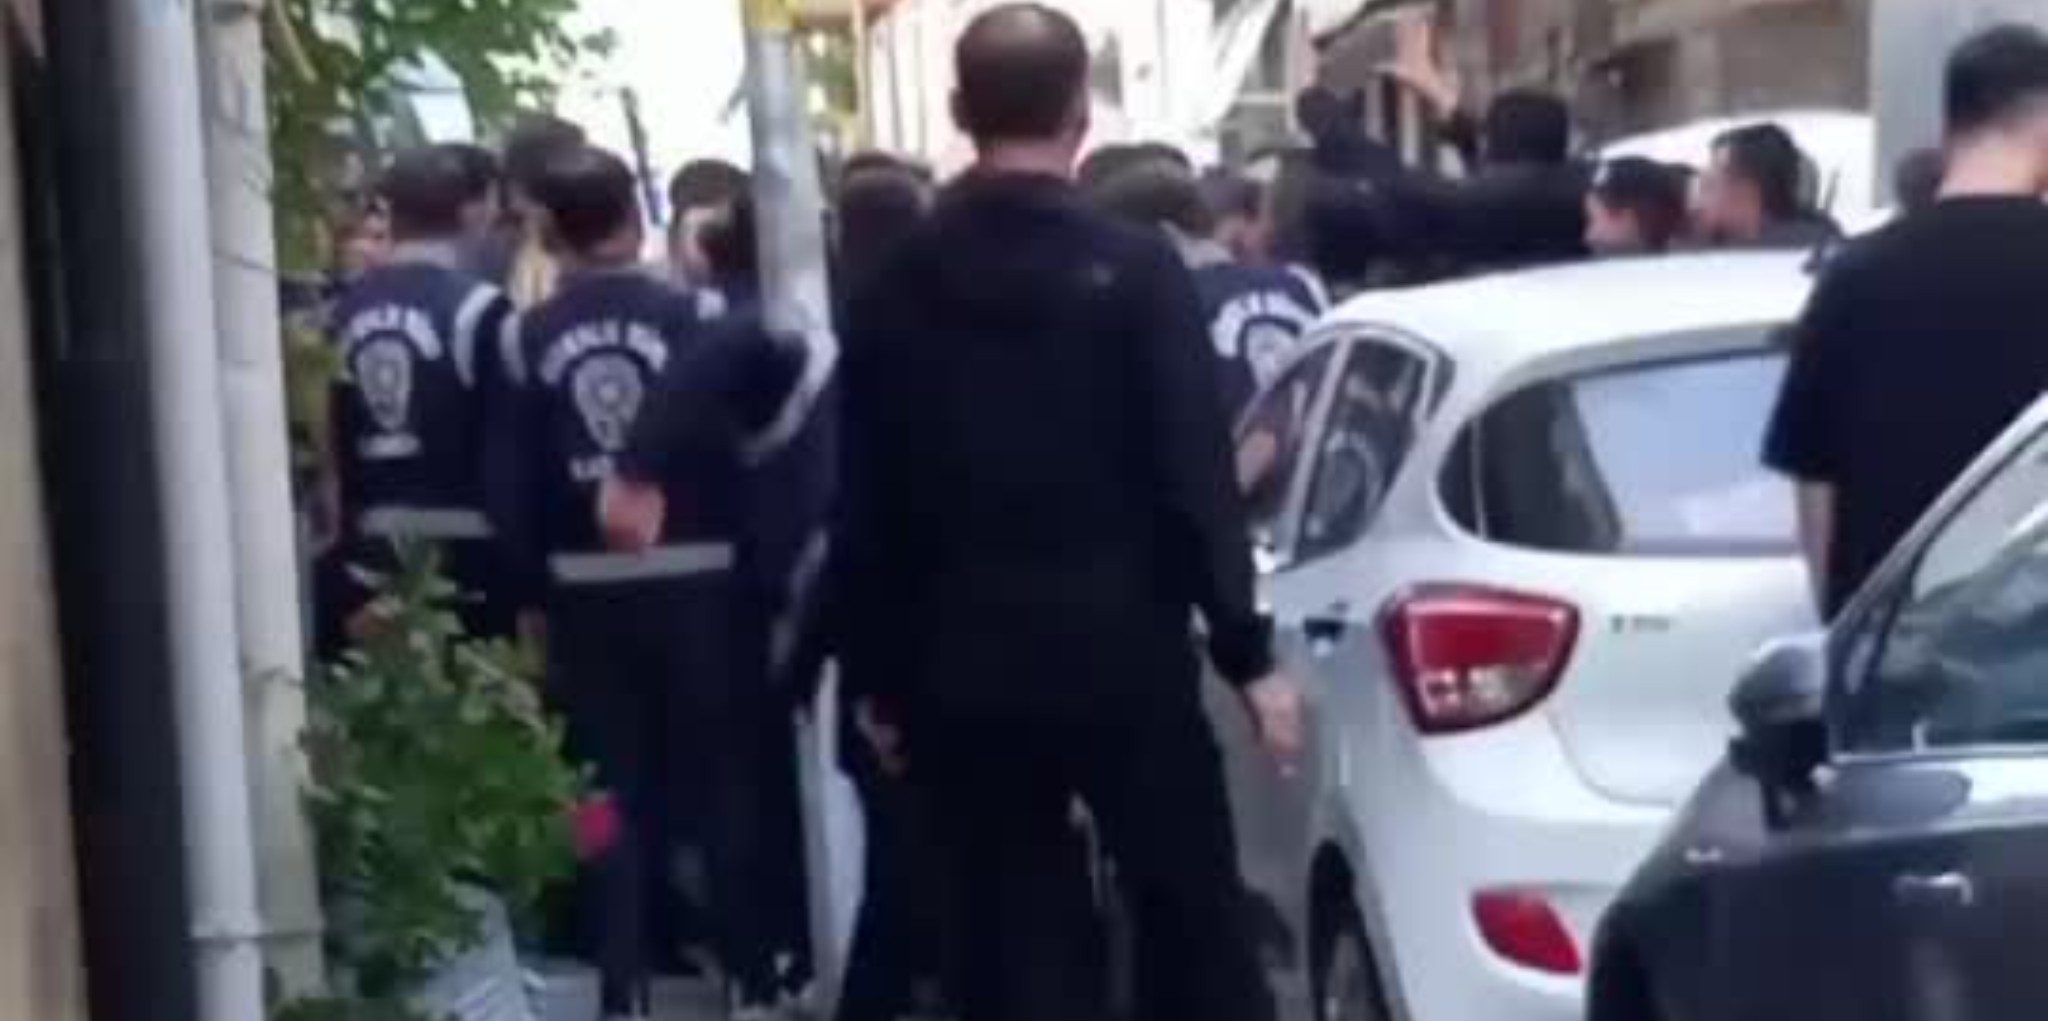 Kadıköy Kaymakamlığı yasakladı, yasağa direnenler gözaltına alındı - ÜniKuir